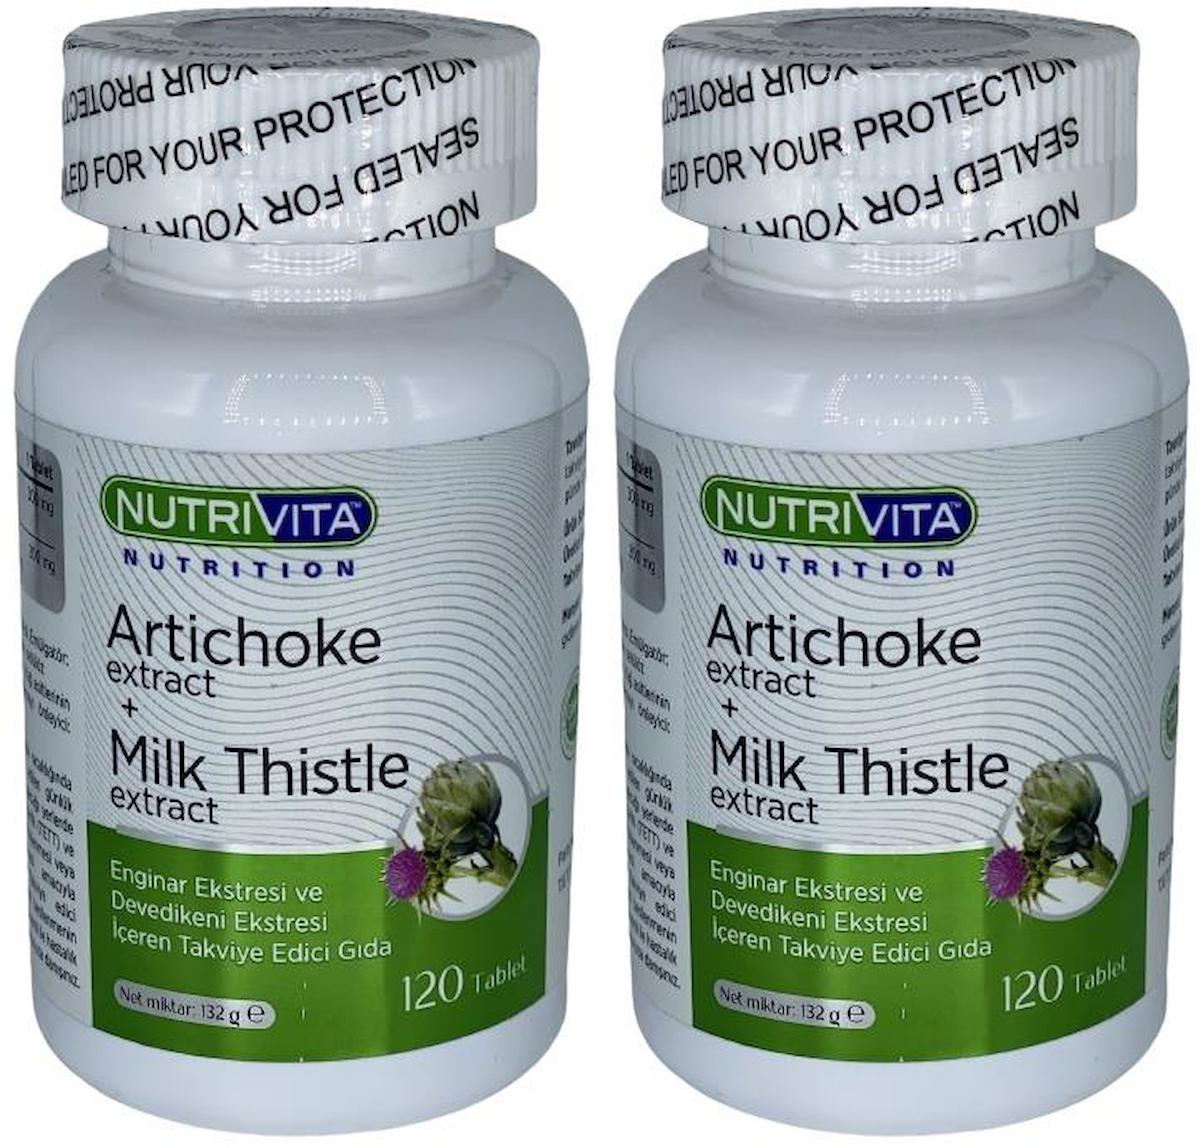 Nutrivita Nutrition Artichoke Aromasız Yetişkin Bitkisel Besin Desteği 2x120 Tablet